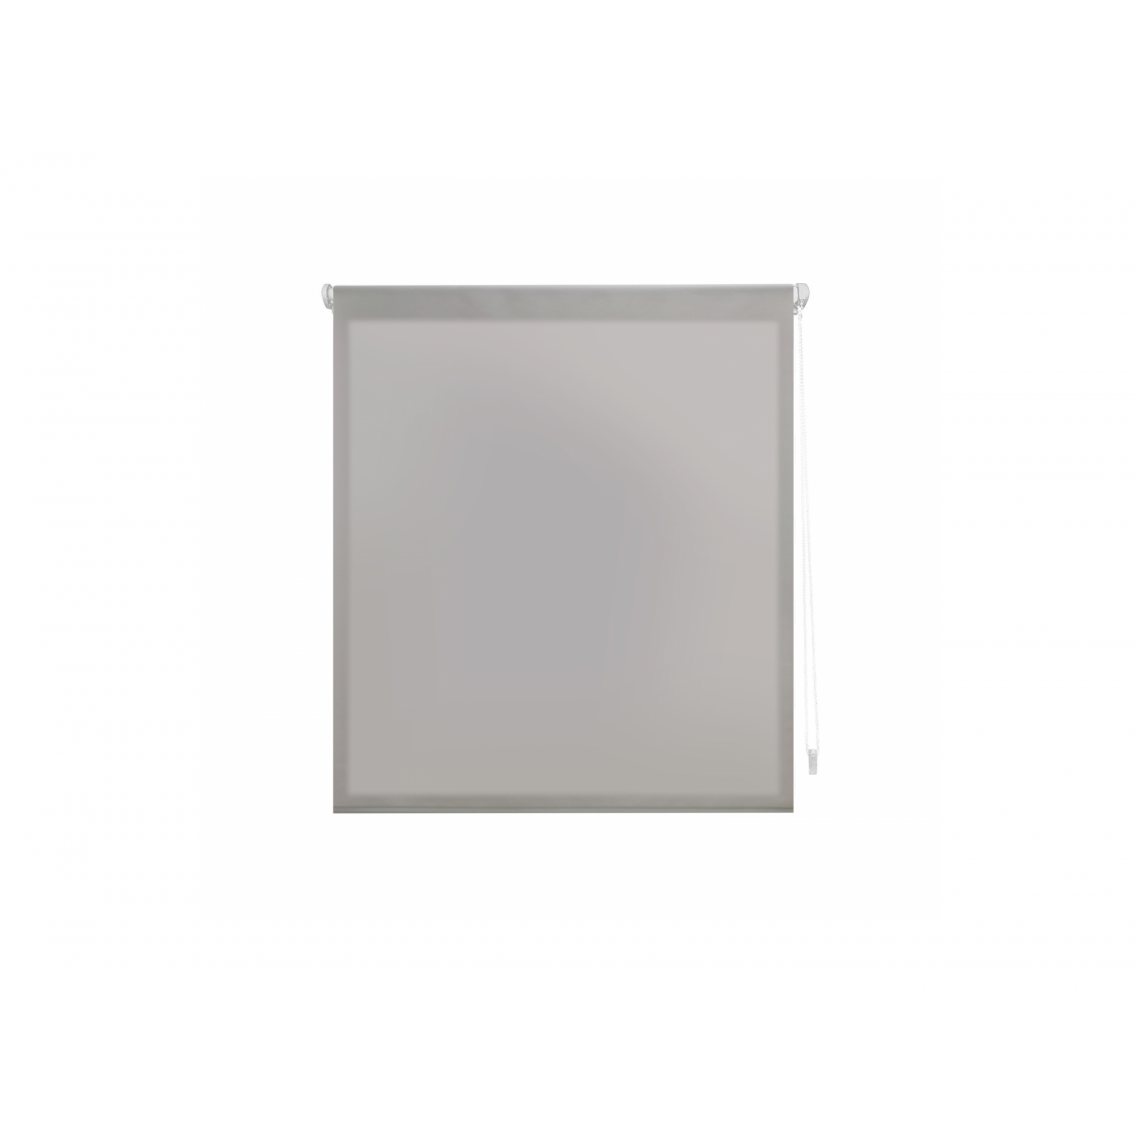 Purline - Store enrouleur 52X180 ARGENT Translucide EASY FIX, Assemblage facile par des pinces de cadre de fenêtre ou un adhésif - Store compatible Velux